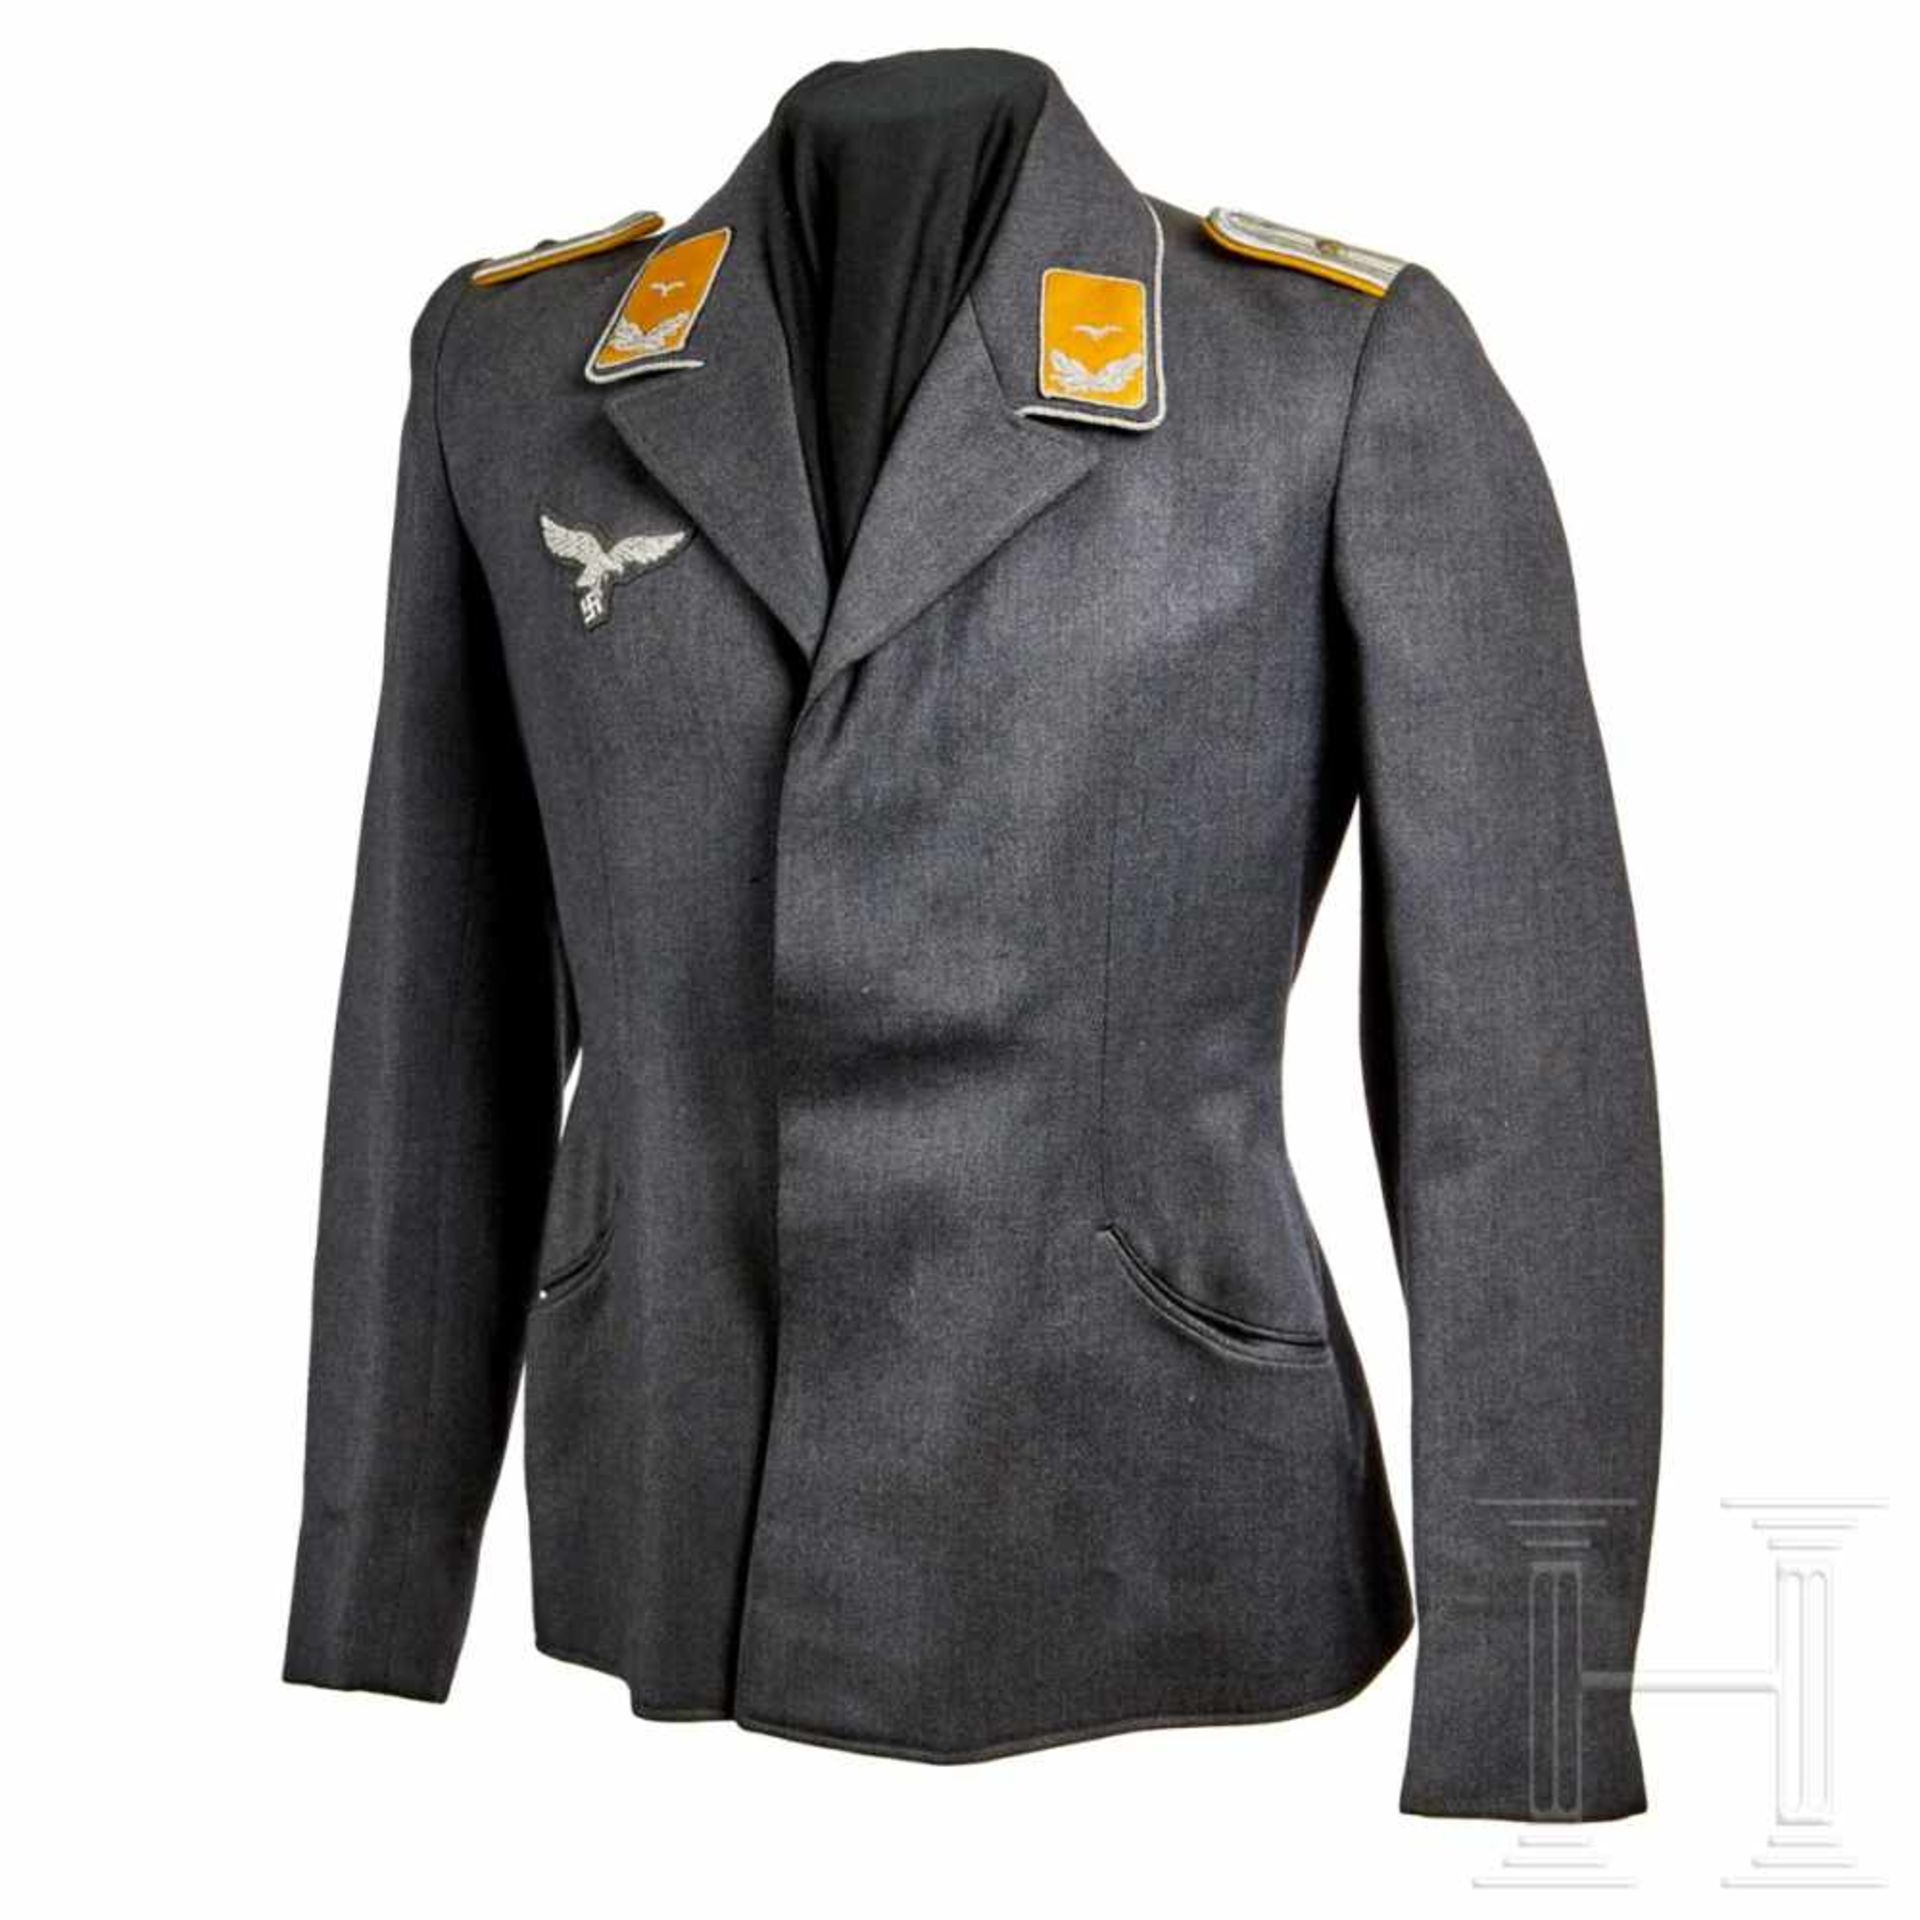 A Fliegerbluse for an officerLuftwaffe blue-grey tricot wool, four hidden buttons (silver NSDAP),